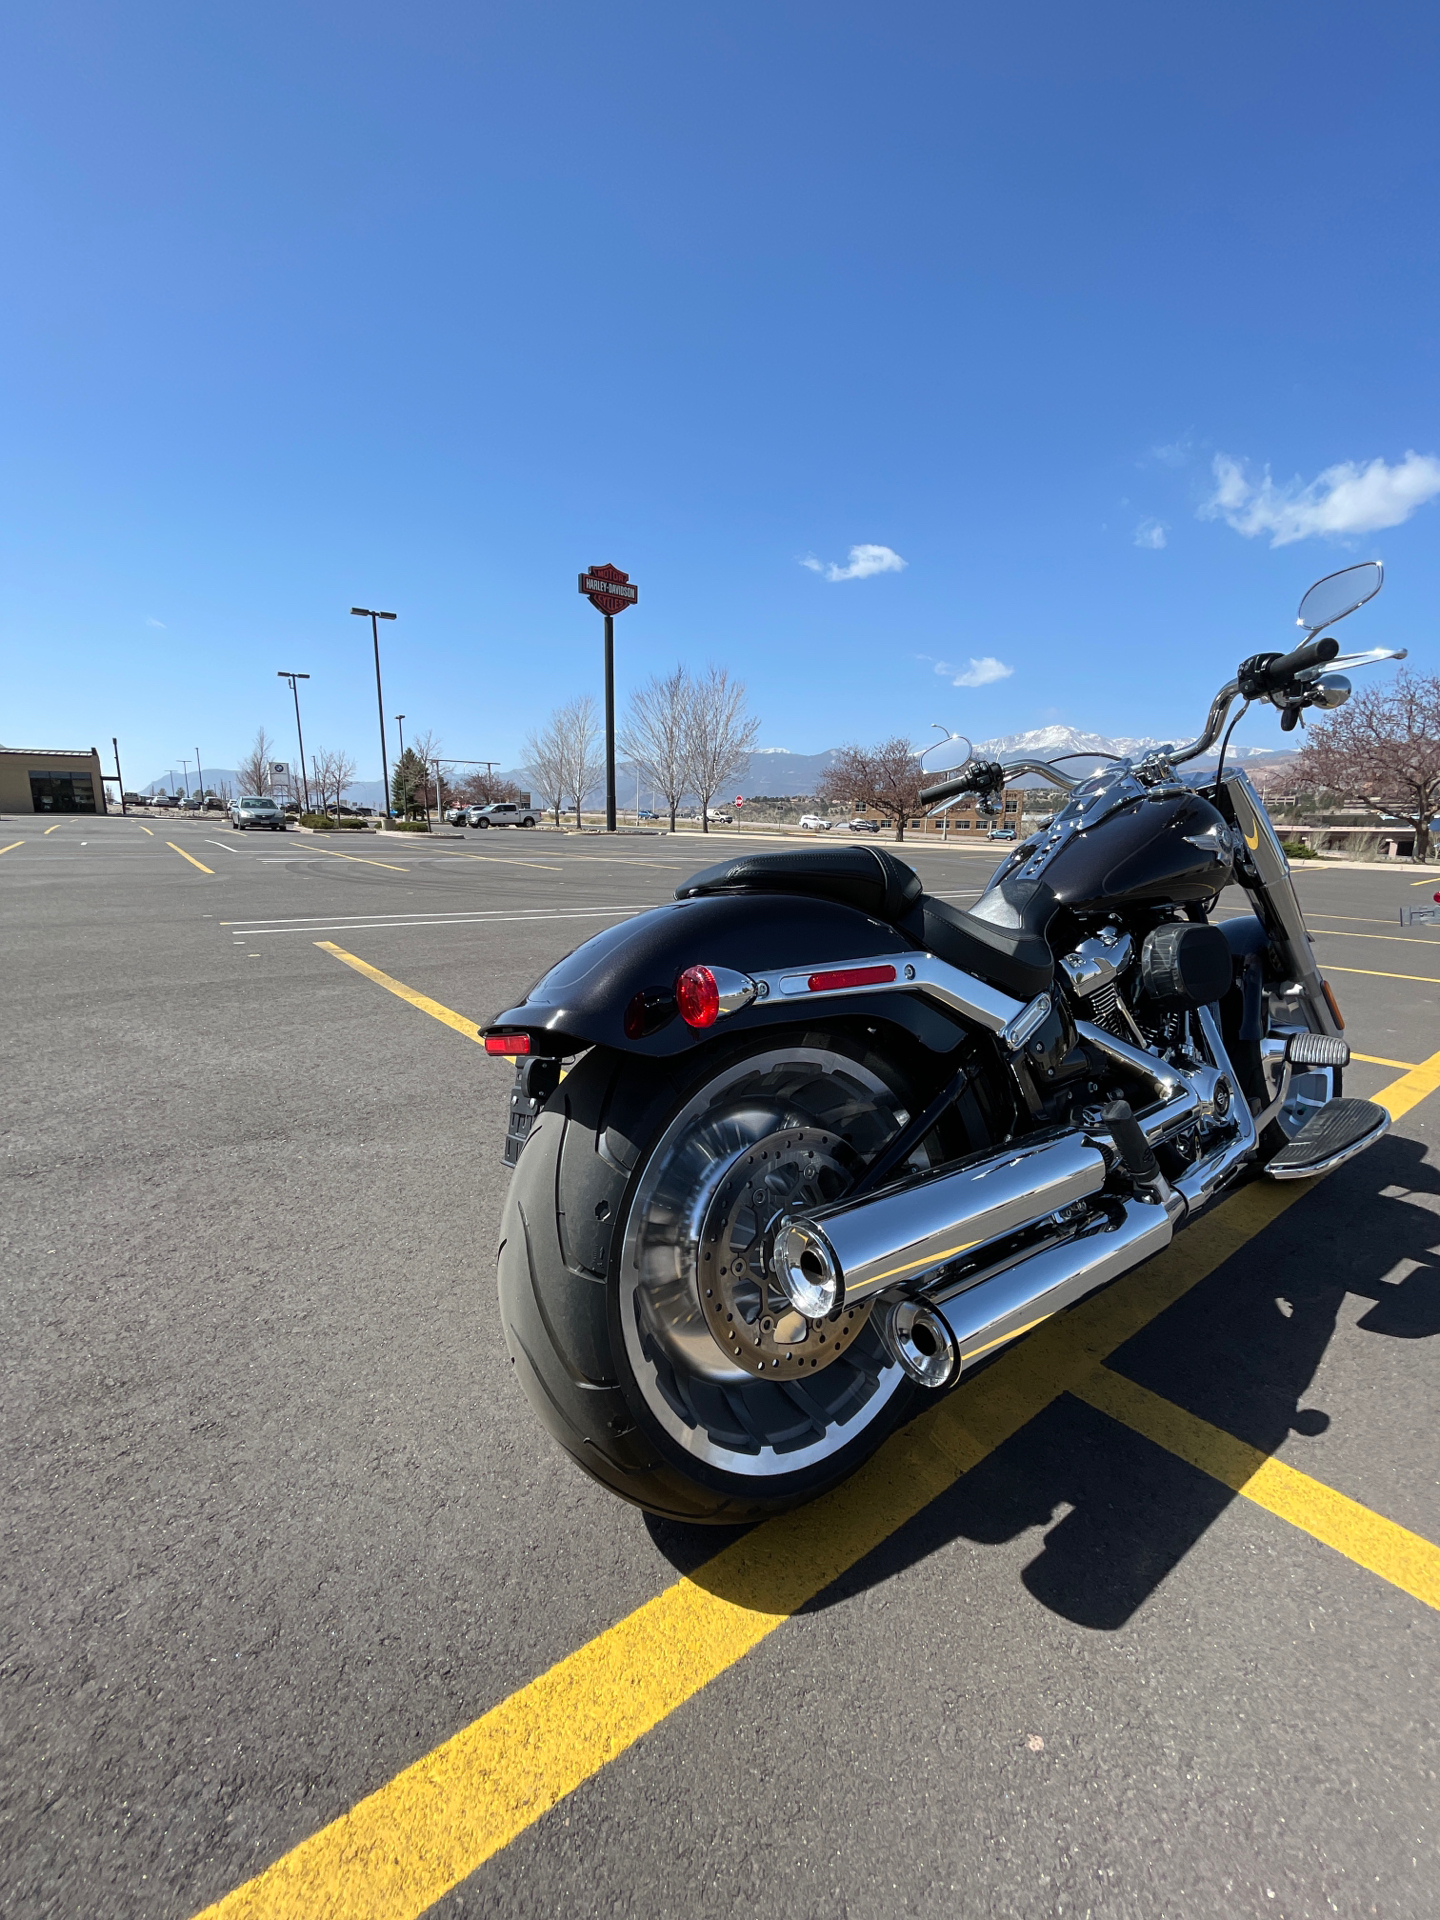 2021 Harley-Davidson Fat Boy® 114 in Colorado Springs, Colorado - Photo 6